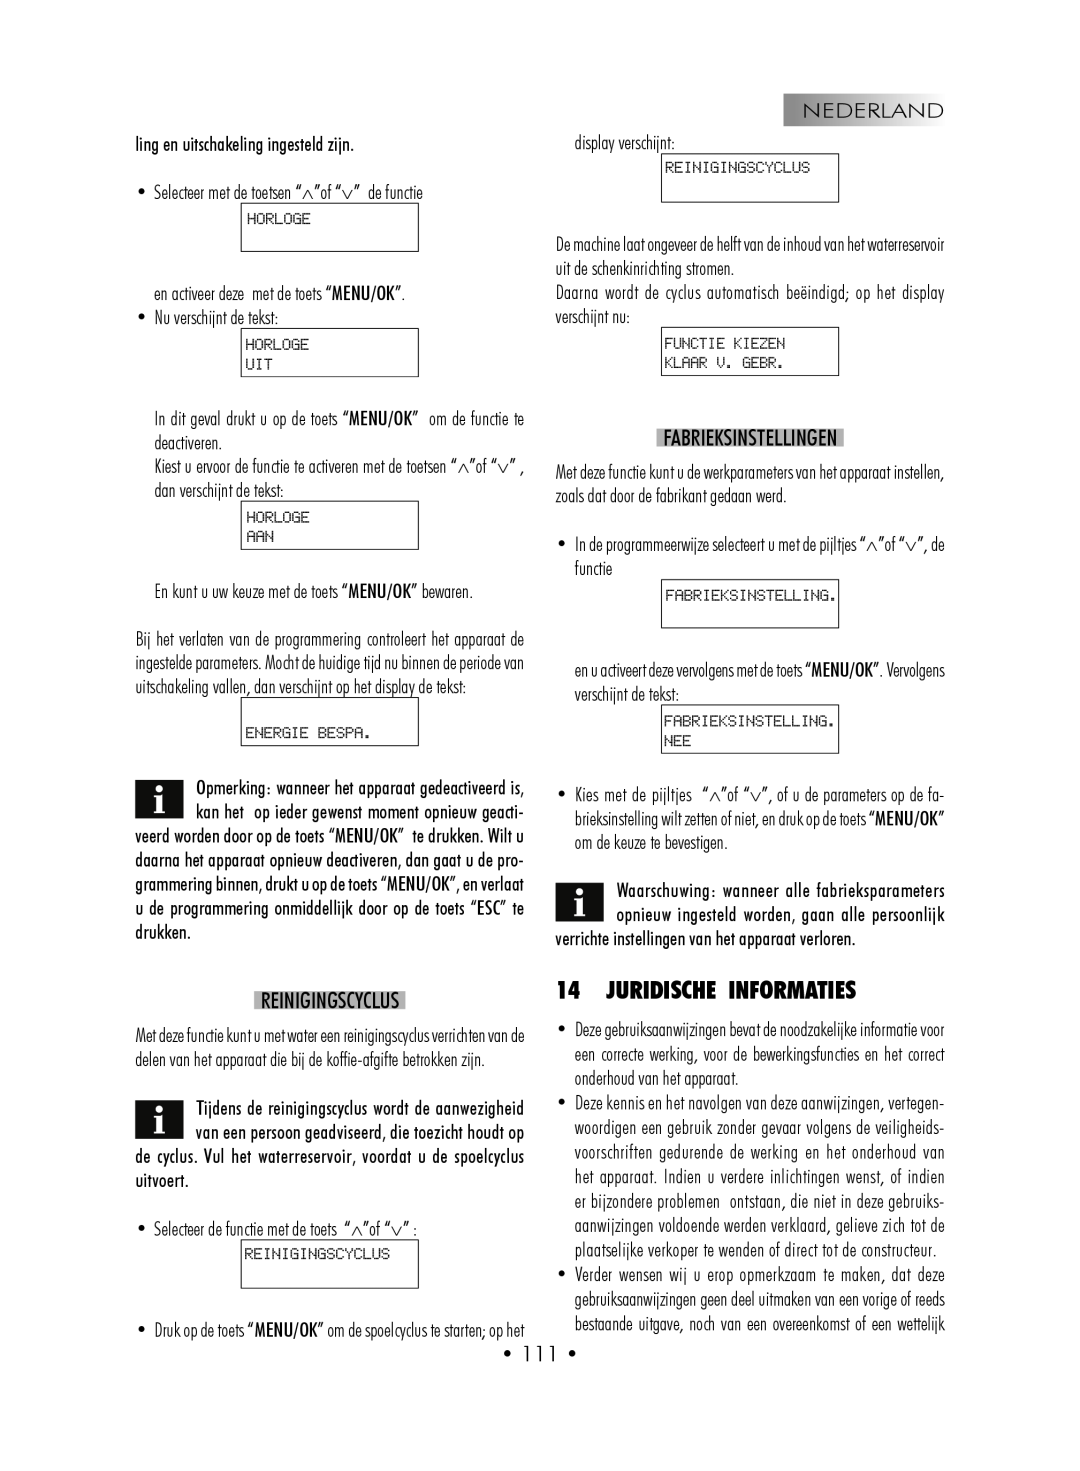 Gaggia SUP027YDR manual Juridische Informaties, Fabrieksinstellingen, Reinigingscyclus, • 111 • 